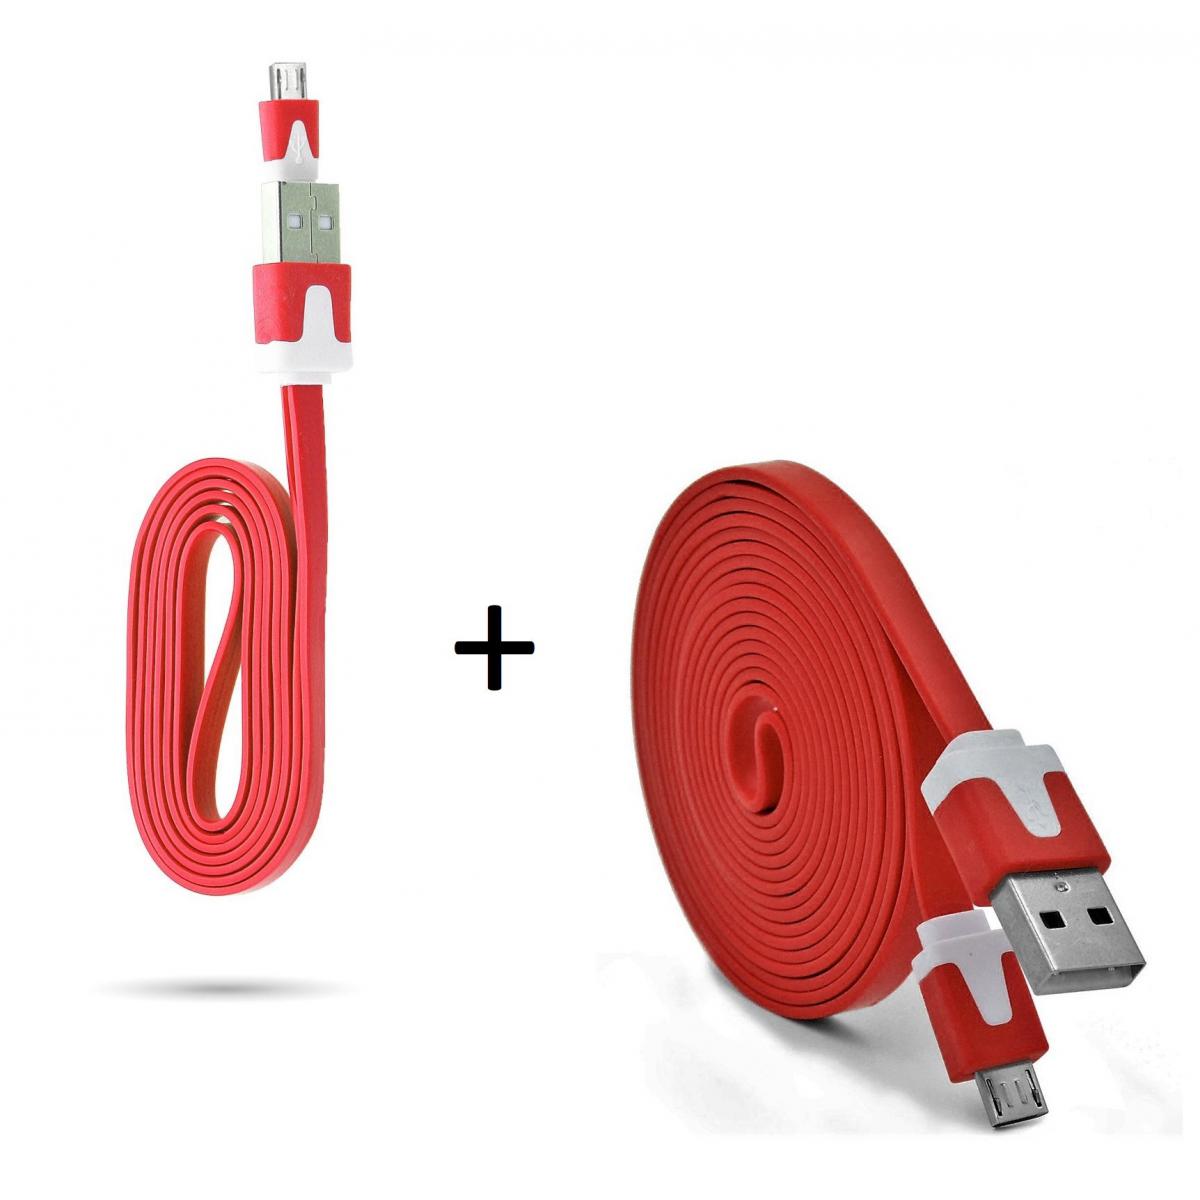 Shot - Pack Chargeur pour HUAWEI Y5 2019 Smartphone Micro USB (Cable Noodle 3m + Cable Noodle 1m) Android (ROUGE) - Chargeur secteur téléphone